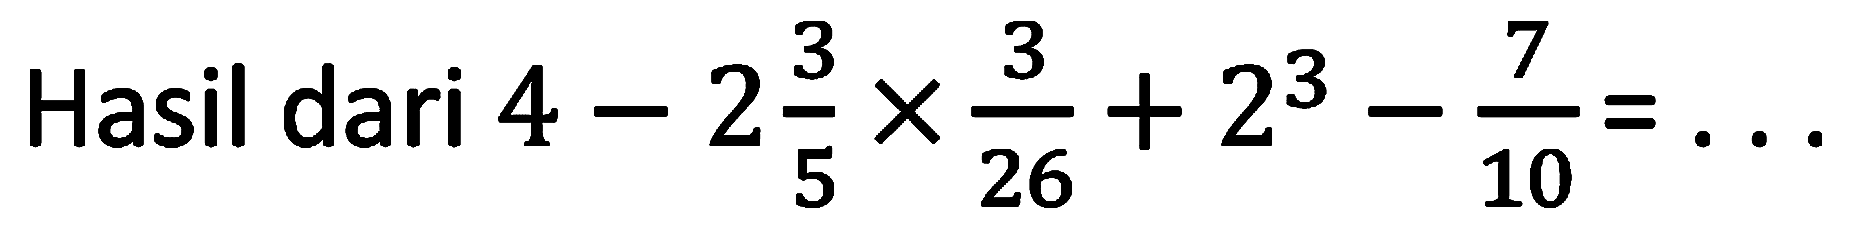 Hasil dari  4-2 (3)/(5) x (3)/(26)+2^(3)-(7)/(10)=...